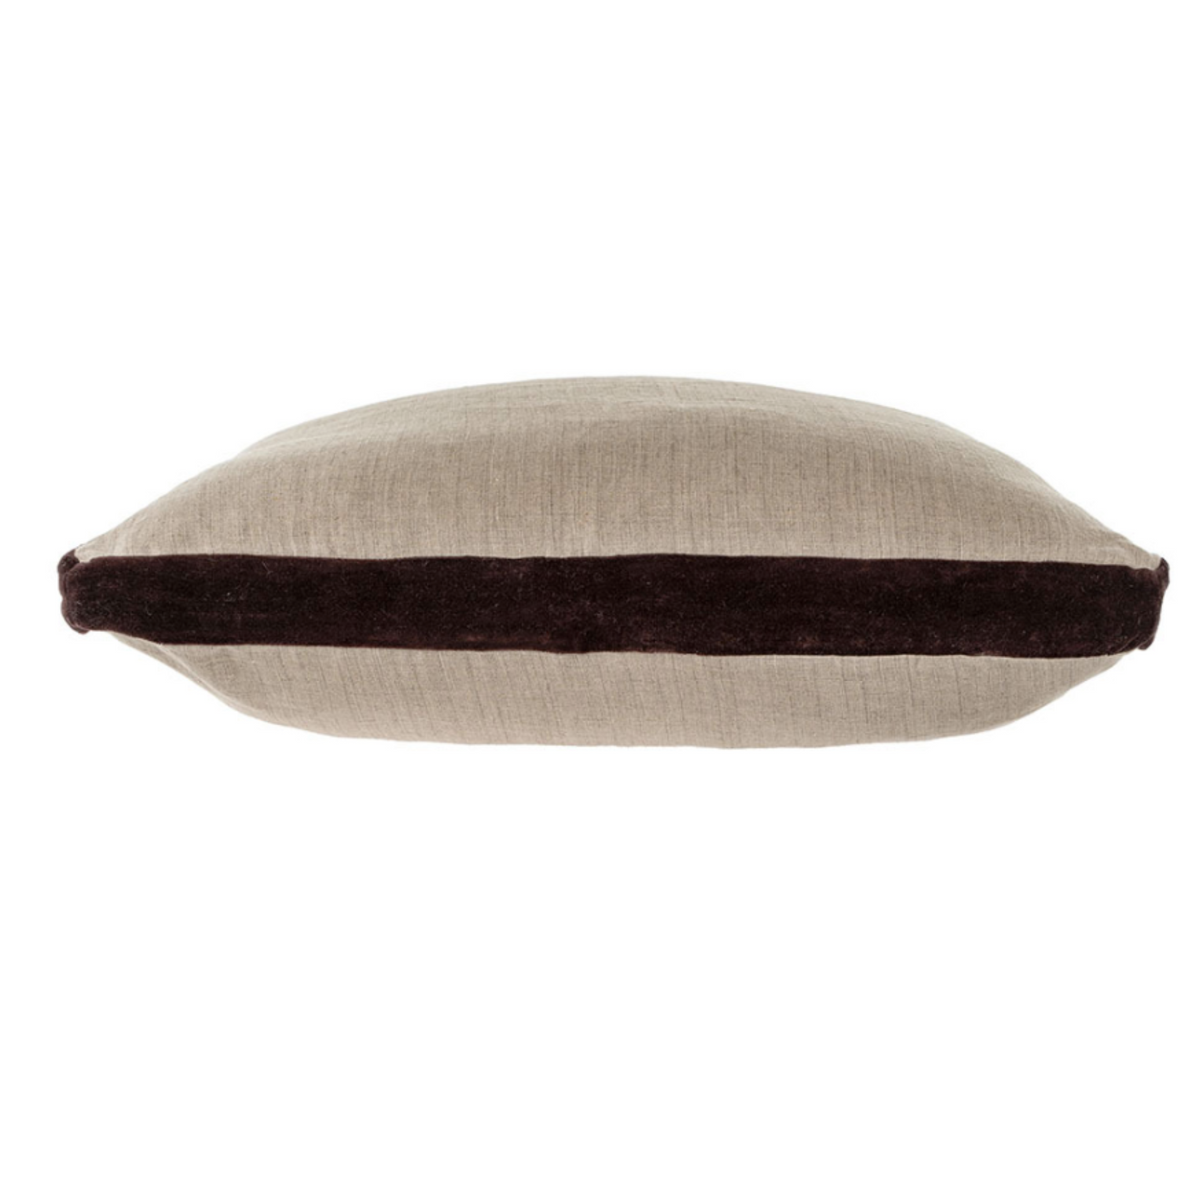 Velvet Trim Pillow, Chocolate - Plum Home + Design